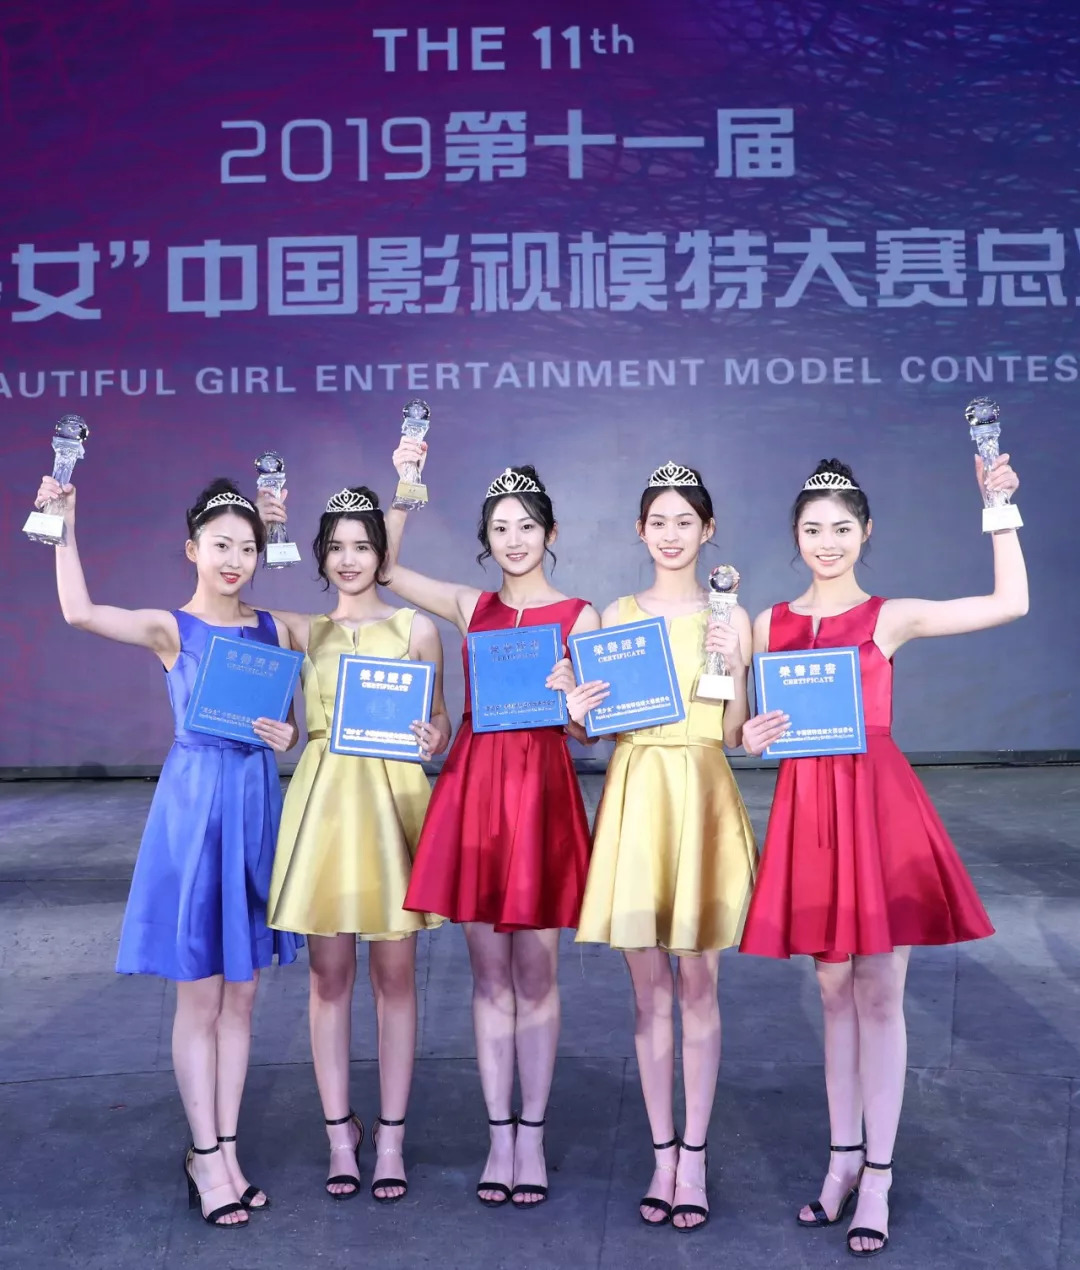 2019中国(广州)国际模特大赛总决赛,潍坊18岁女孩获影视模特组冠军